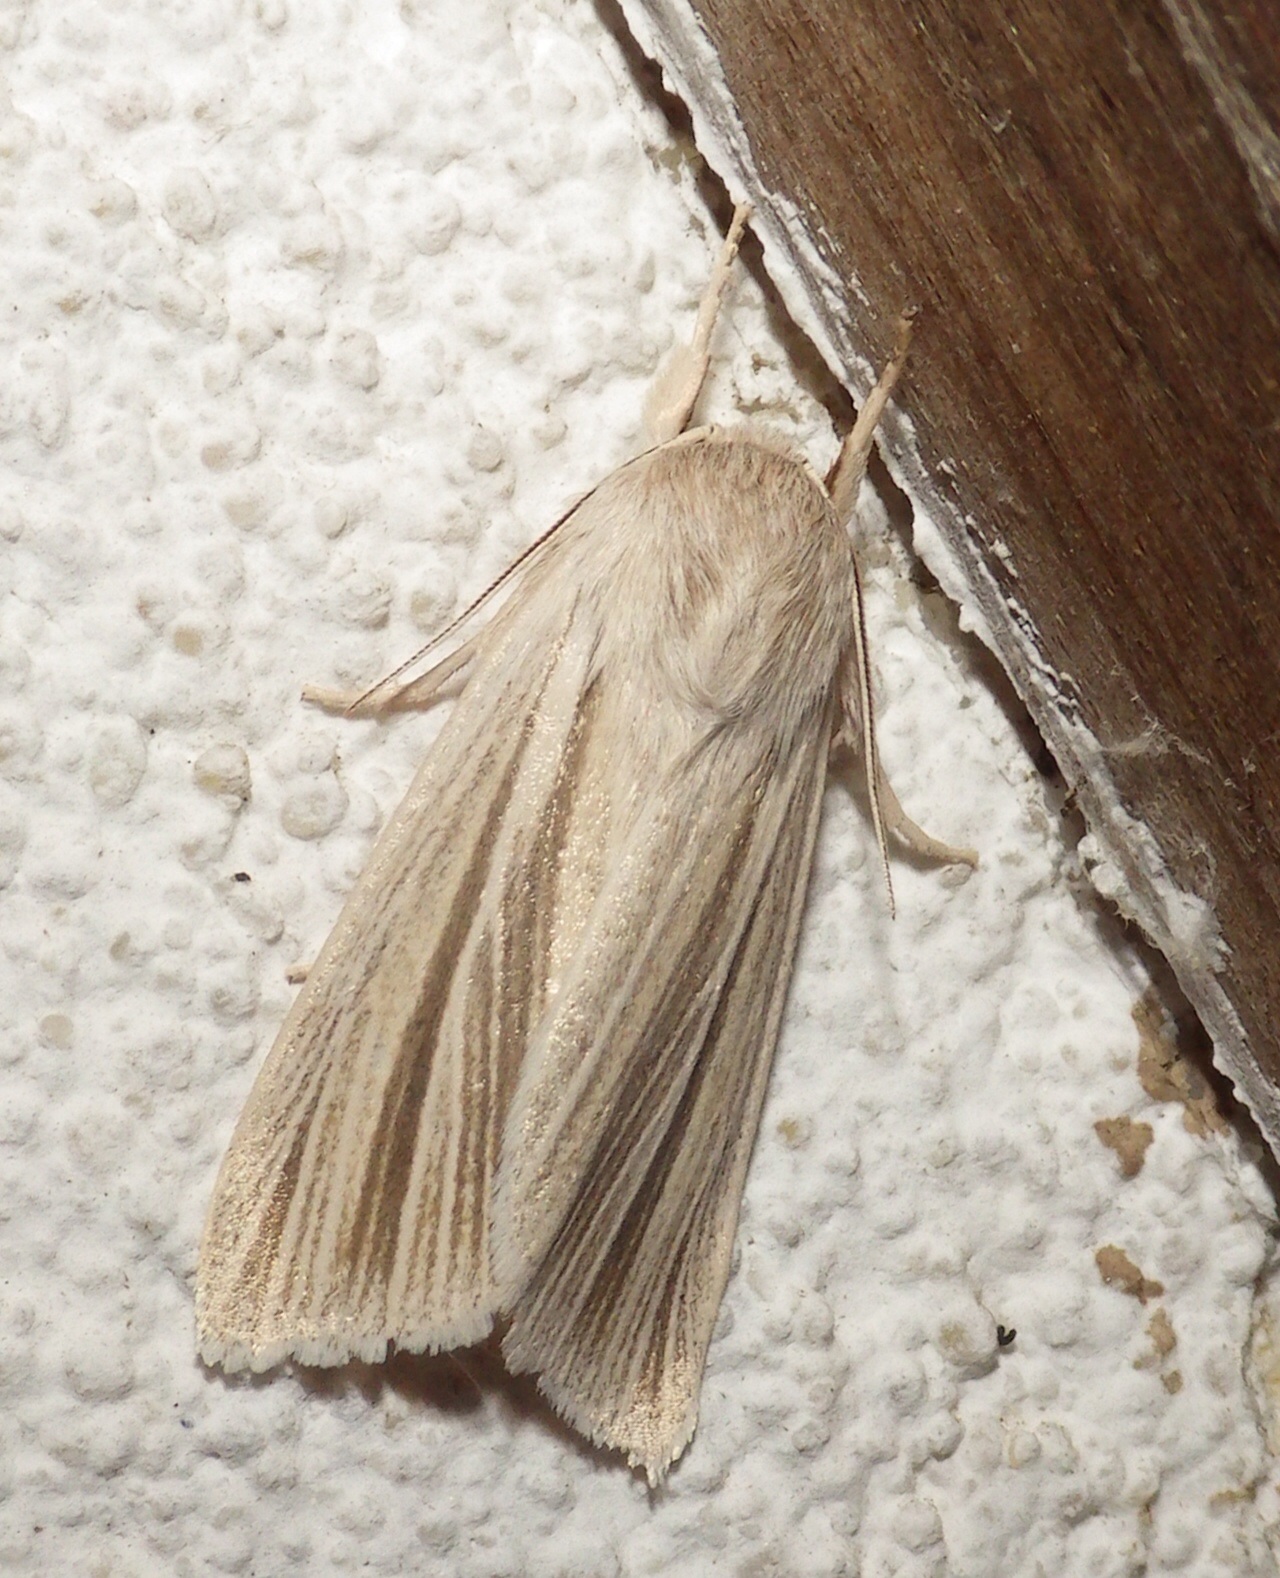  9280,  Simyra insularis,  Henrys Marsh Moth 